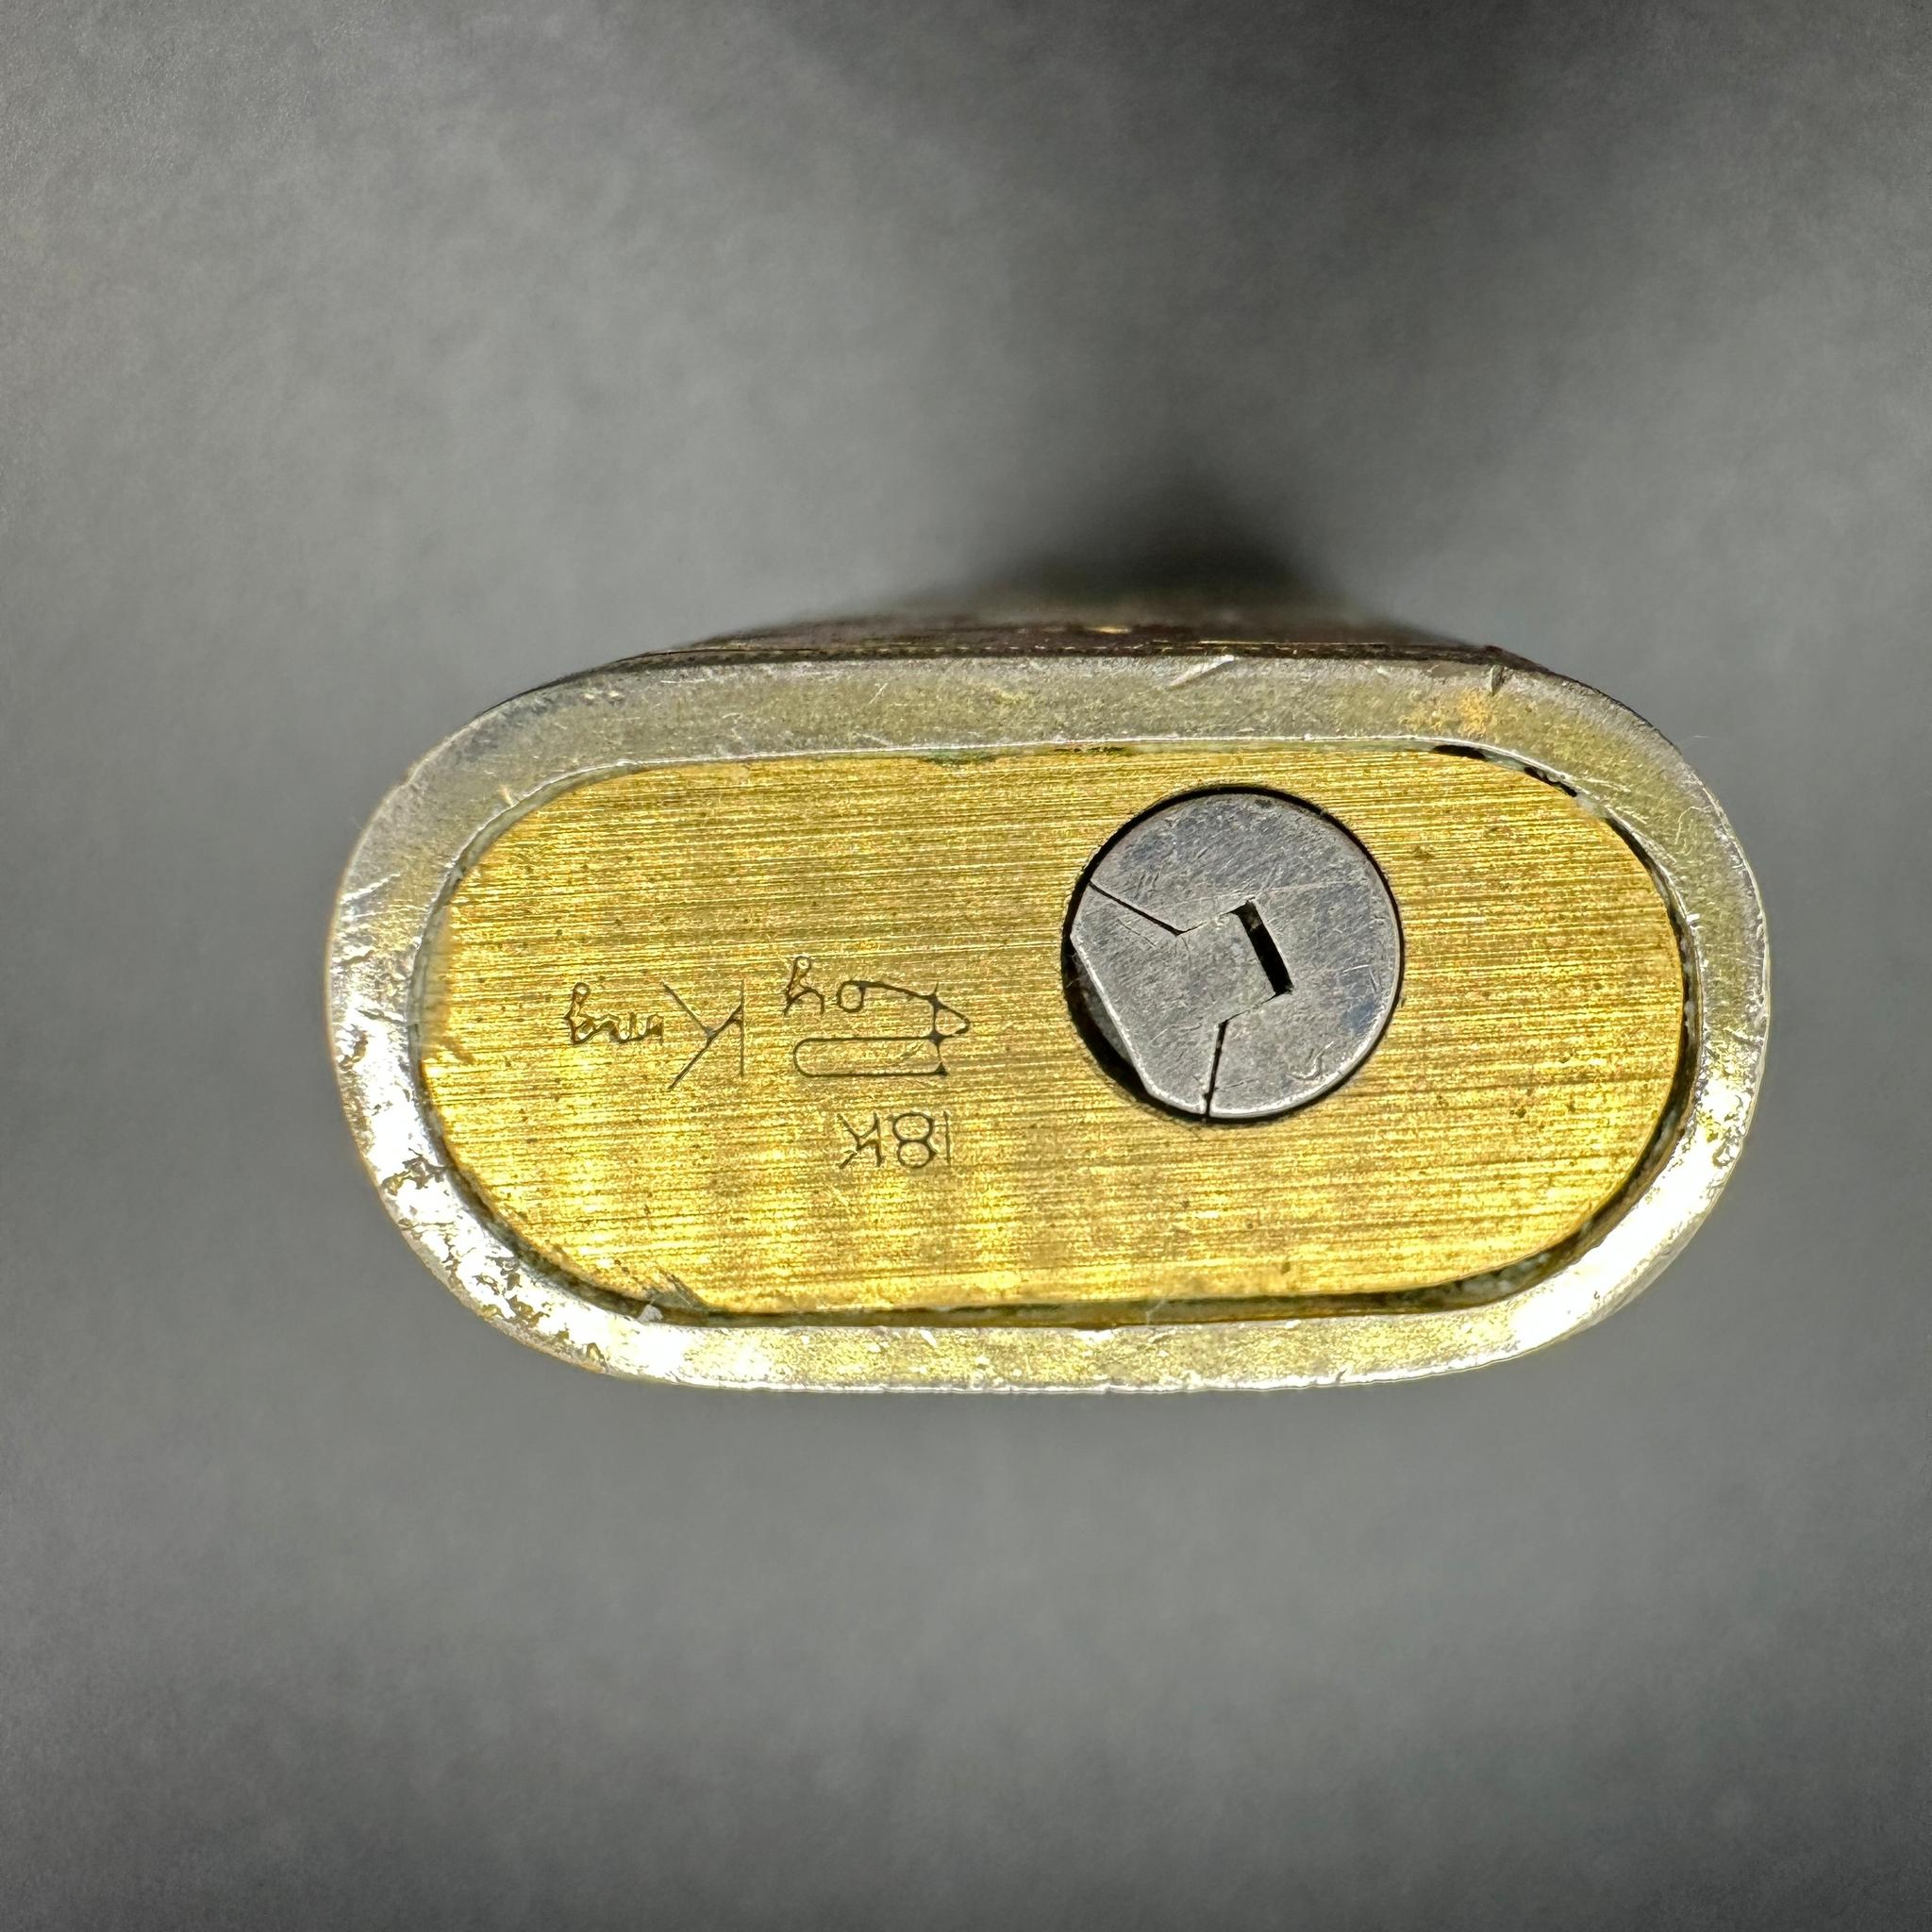 Briquet Roy King de Cartier.
Cartier Roy King Rollagas, un exemple RARE et unique d'un briquet Rollagas Cartier conçu par ROY KING, fabriqué dans les années 1970, en or 18 carats avec une laque Art Déco crème et des paillettes d'or. 
En parfait